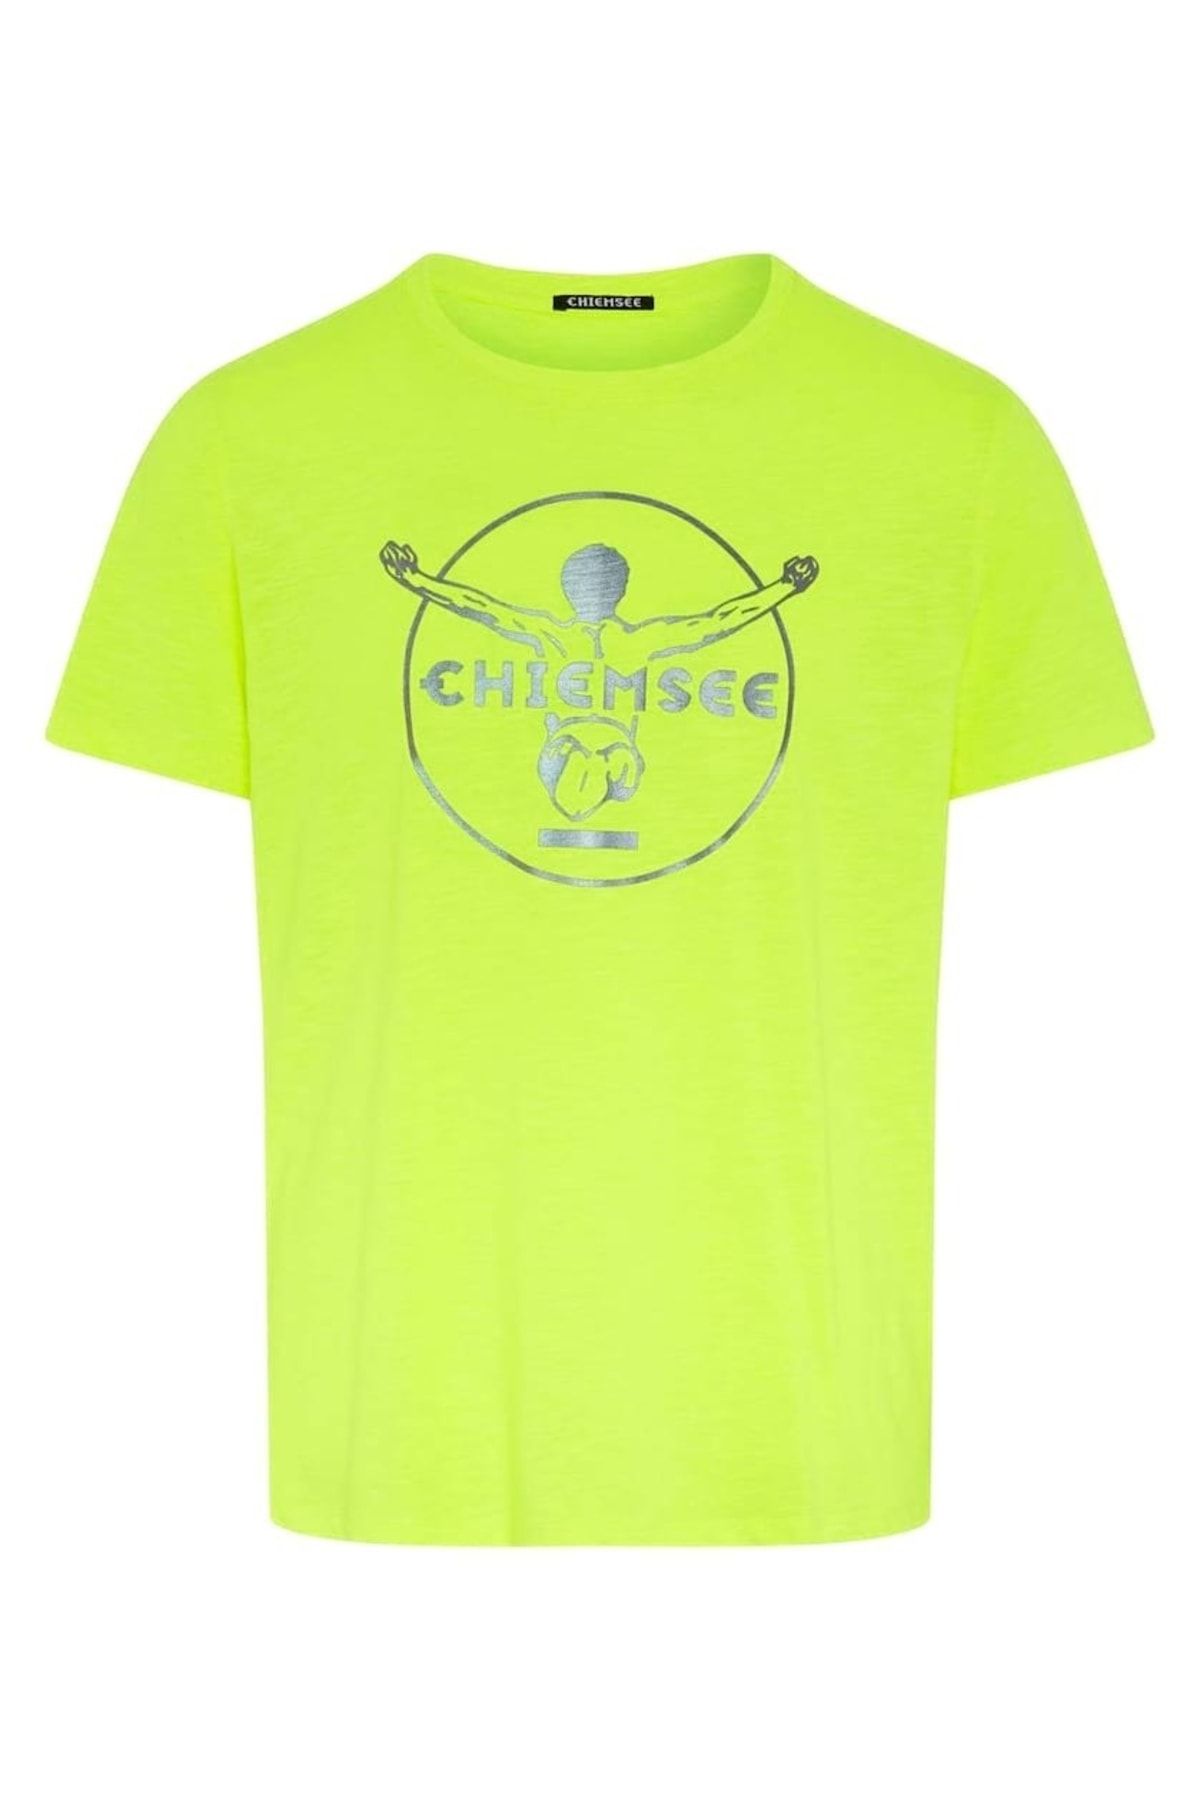 Chiemsee Herren T-Shirt - Oscar, einfarbig Trendyol großes Logo, Rundhals, Bio-Baumwolle, 